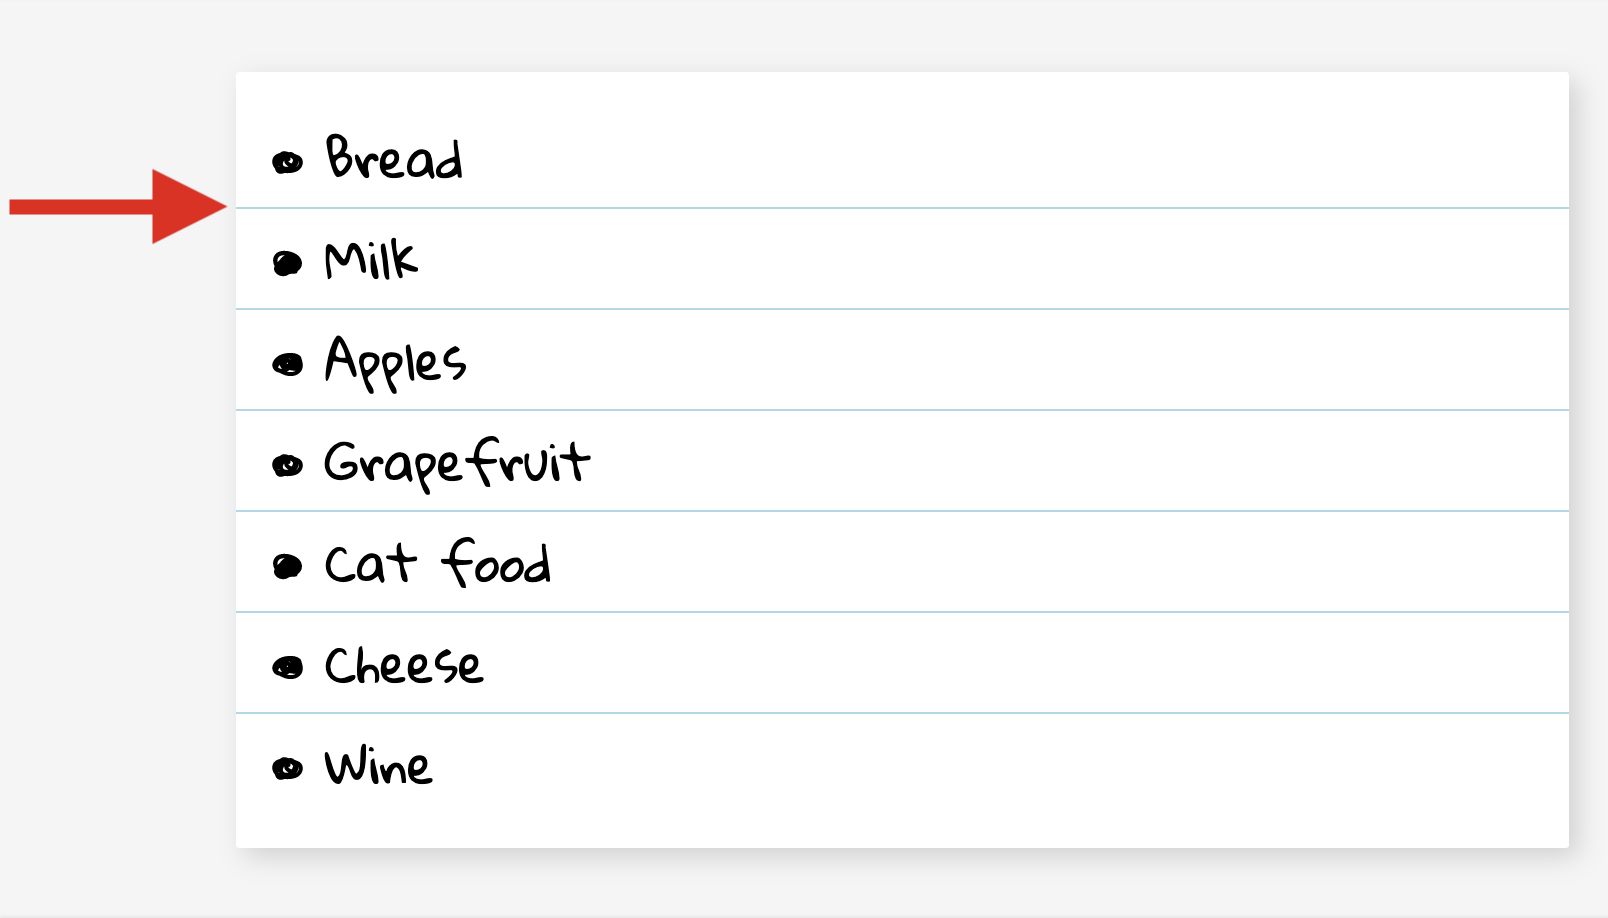 식료품 목록입니다. 각 항목에는 목록의 왼쪽에서 오른쪽 가장자리까지 확장되는 얇은 아래쪽 테두리가 있습니다.